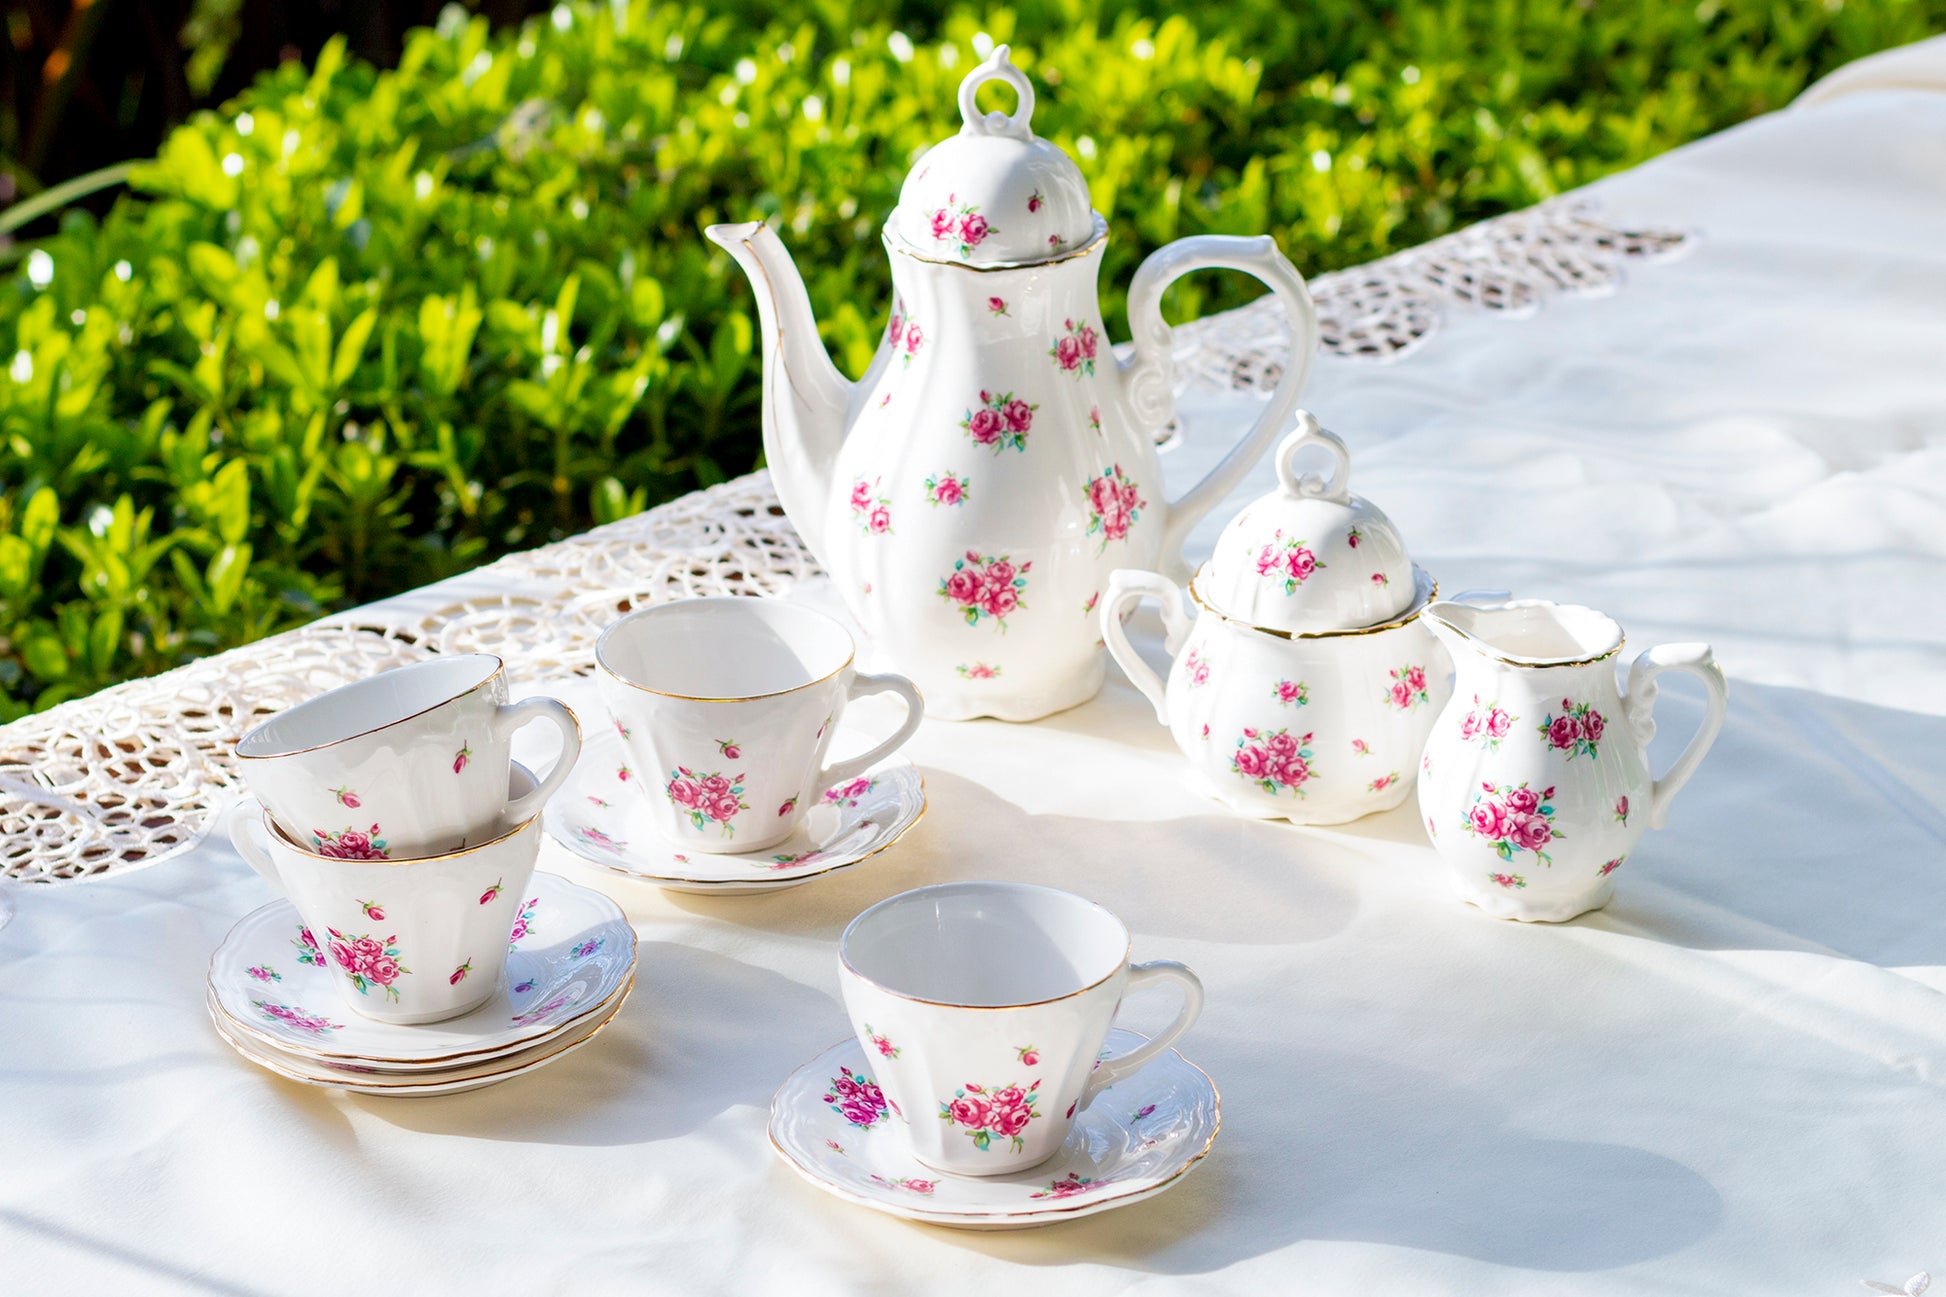 rose rosebud floral tea set children kids teapot sugar creamer cup saucer